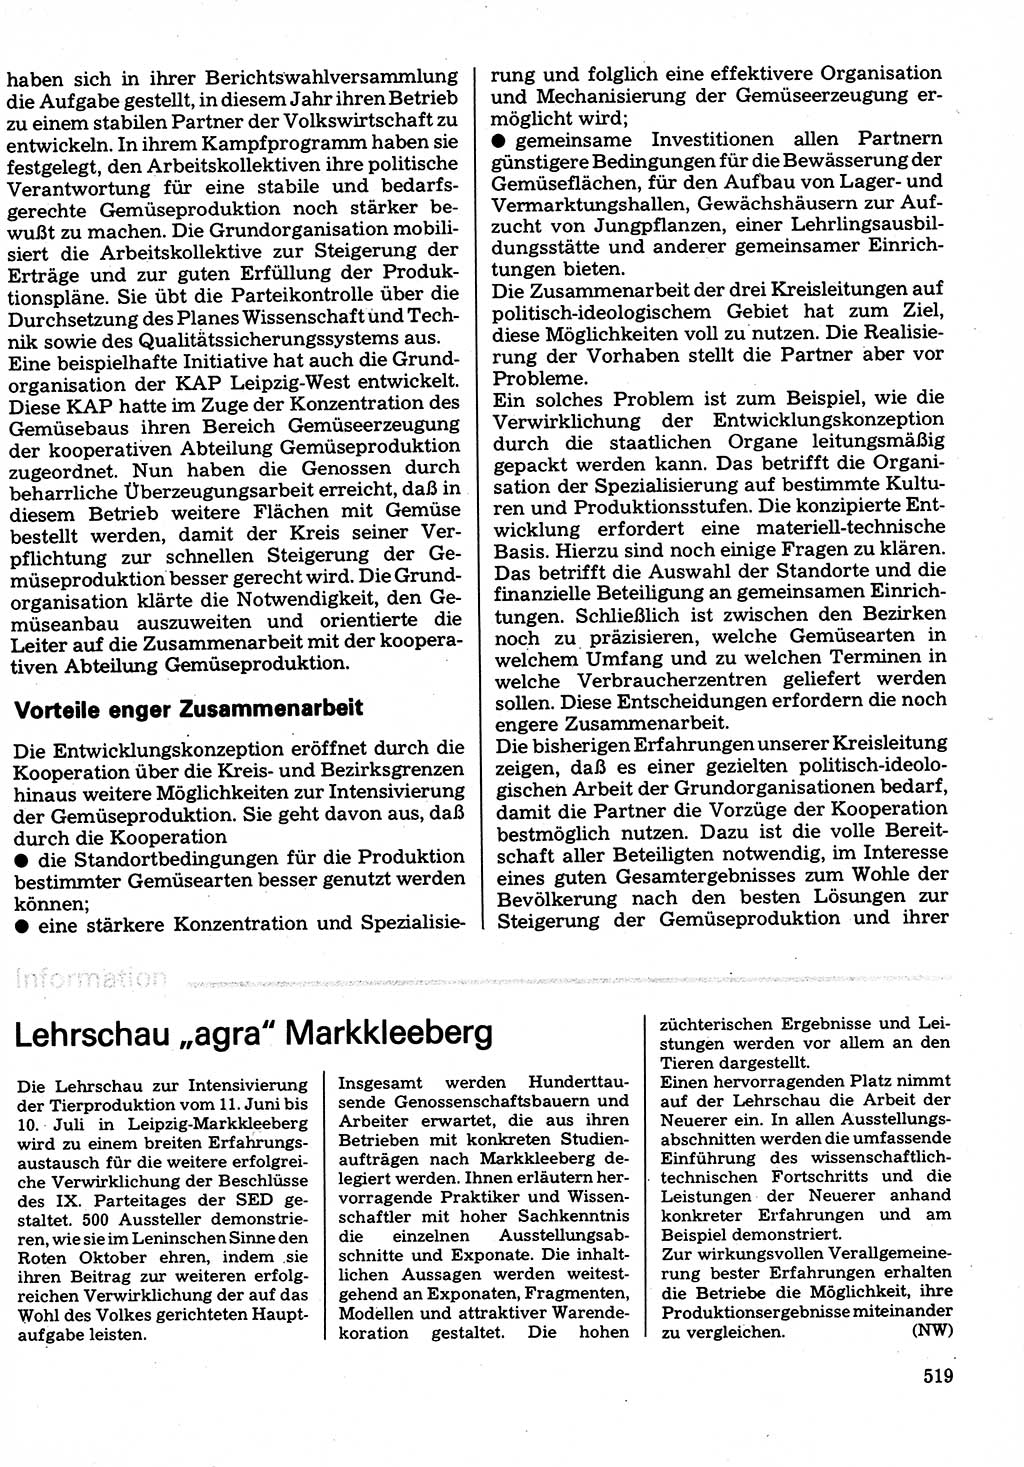 Neuer Weg (NW), Organ des Zentralkomitees (ZK) der SED (Sozialistische Einheitspartei Deutschlands) für Fragen des Parteilebens, 32. Jahrgang [Deutsche Demokratische Republik (DDR)] 1977, Seite 519 (NW ZK SED DDR 1977, S. 519)